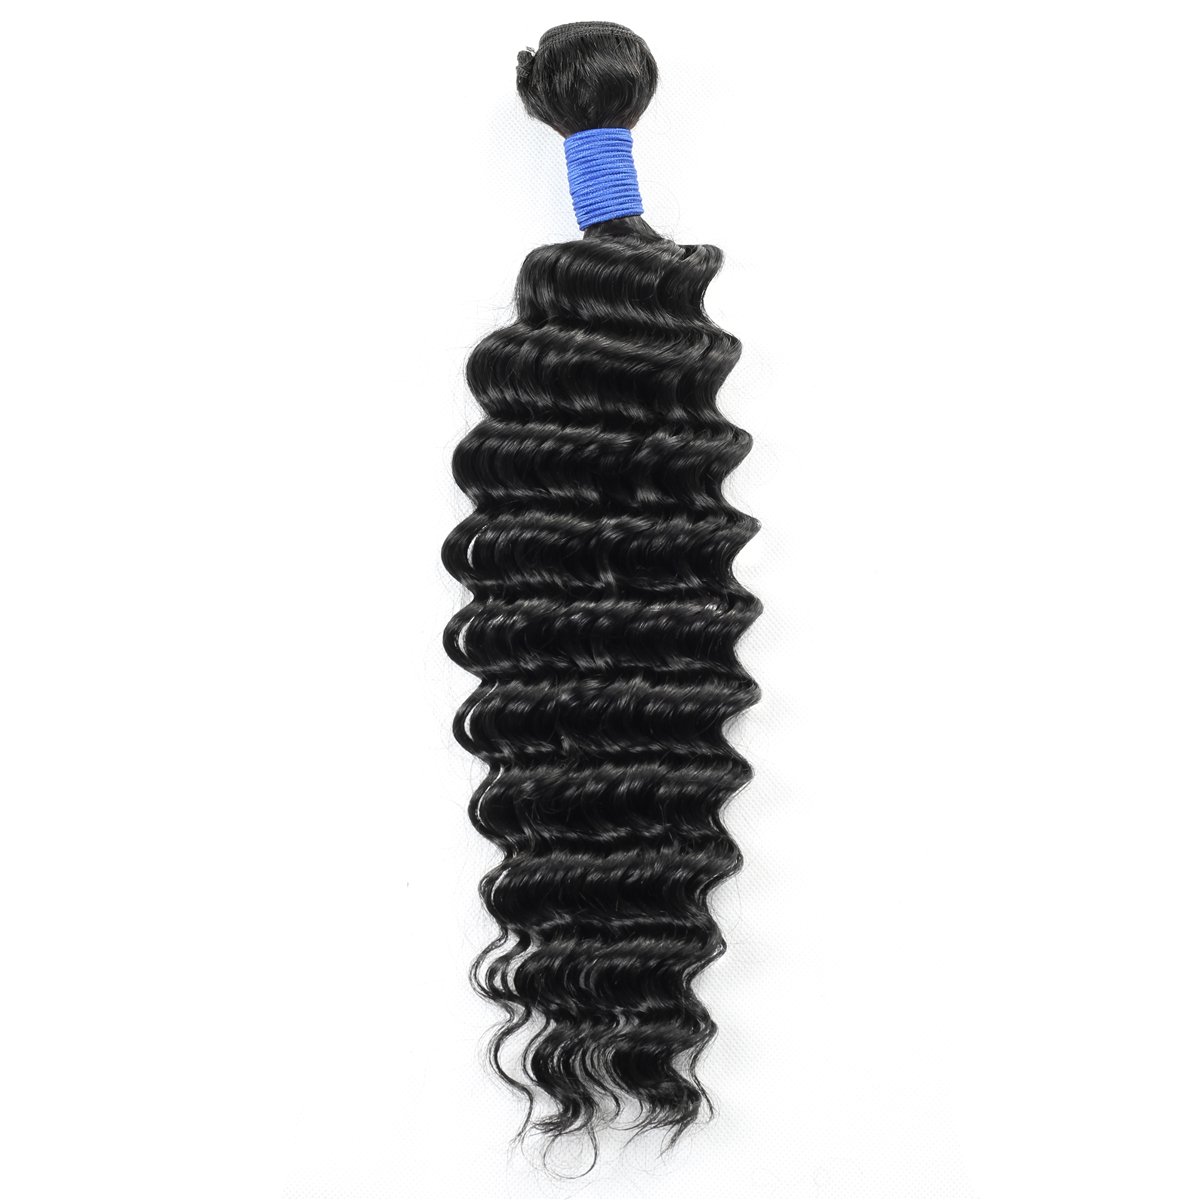 Deep Wave Virgin Remy Human Hair Bundle (Hair Weave) Wholesale